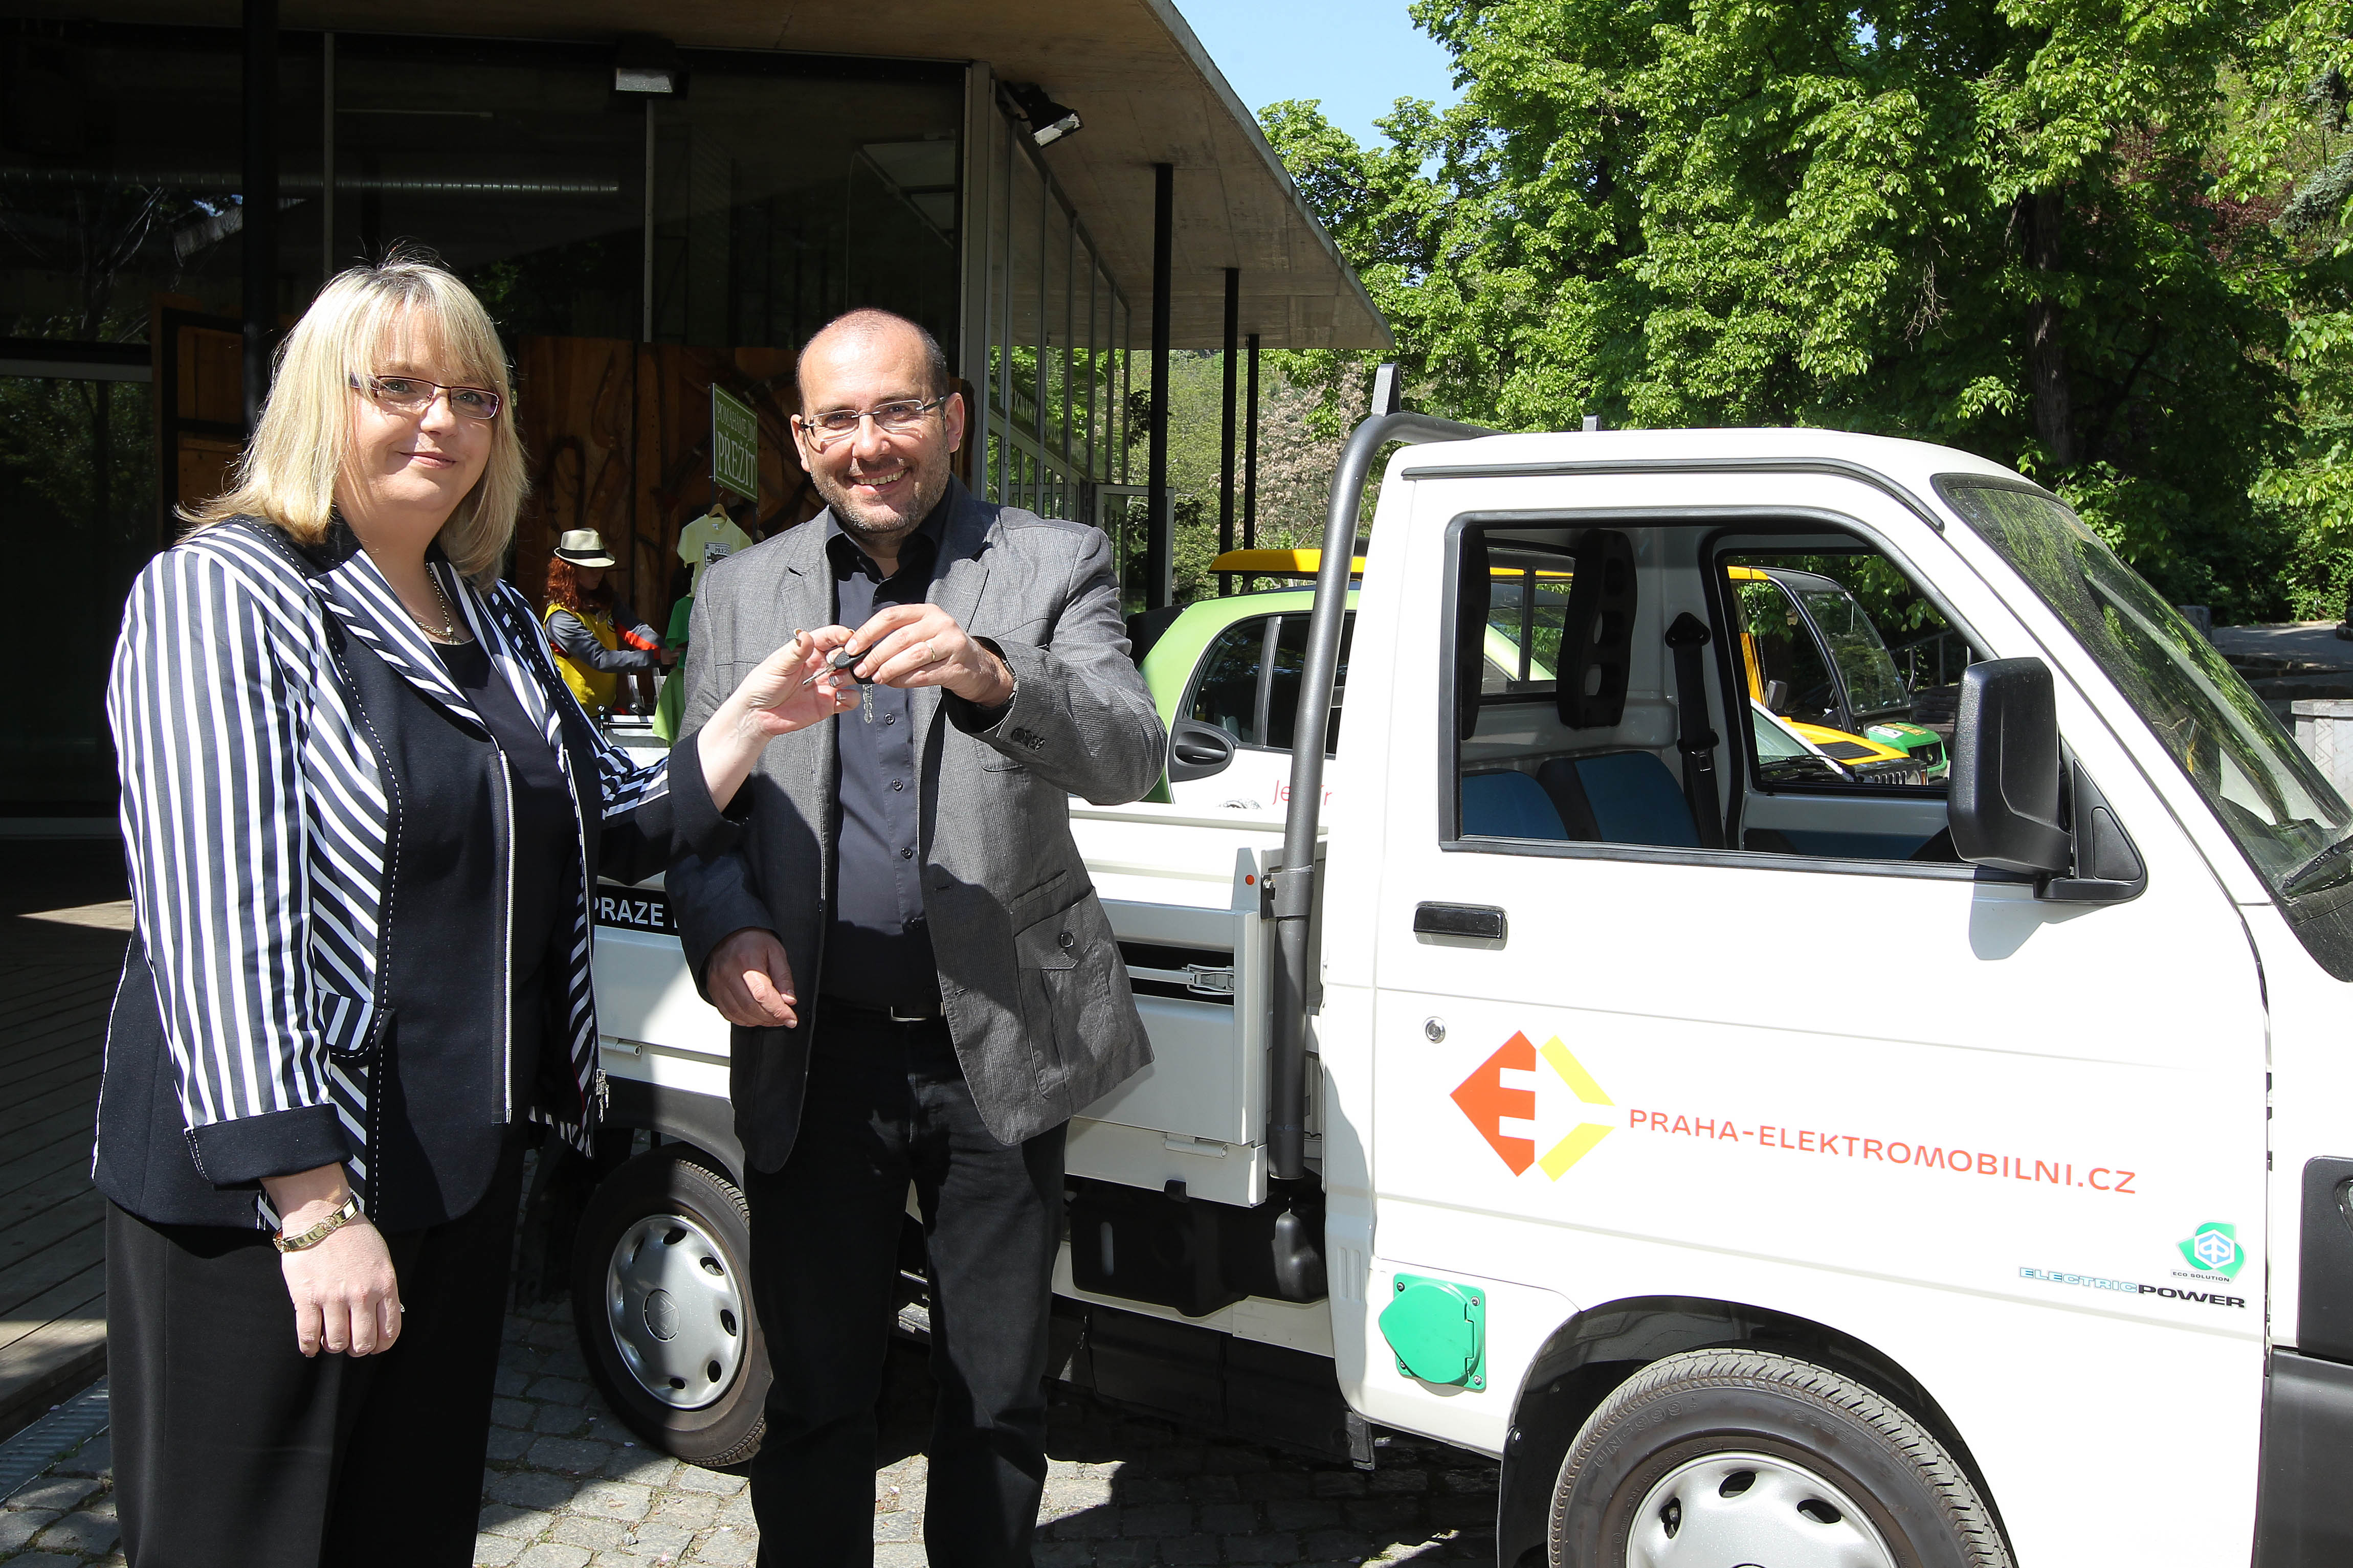 Projekt Praha-elektromobilní pokračuje předáním elektromobilu pražské zoo